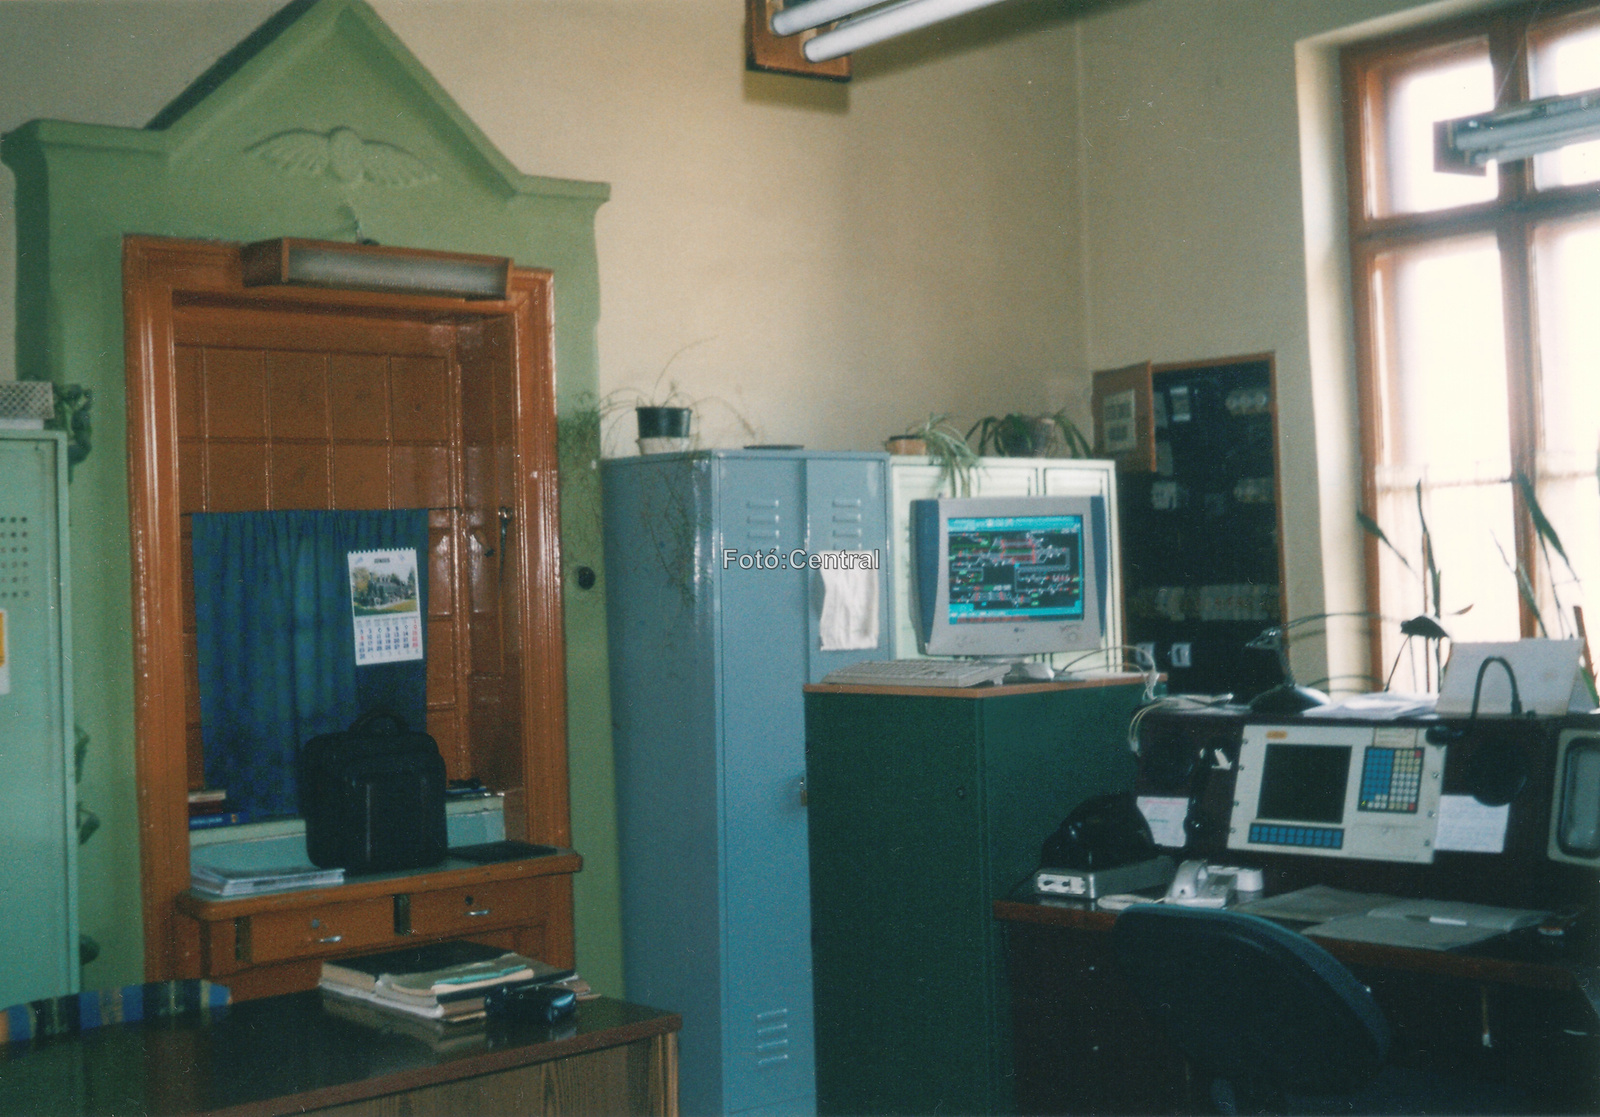 Egy szintén,2003-ban készült képen a jegypénztári ablakot láthat